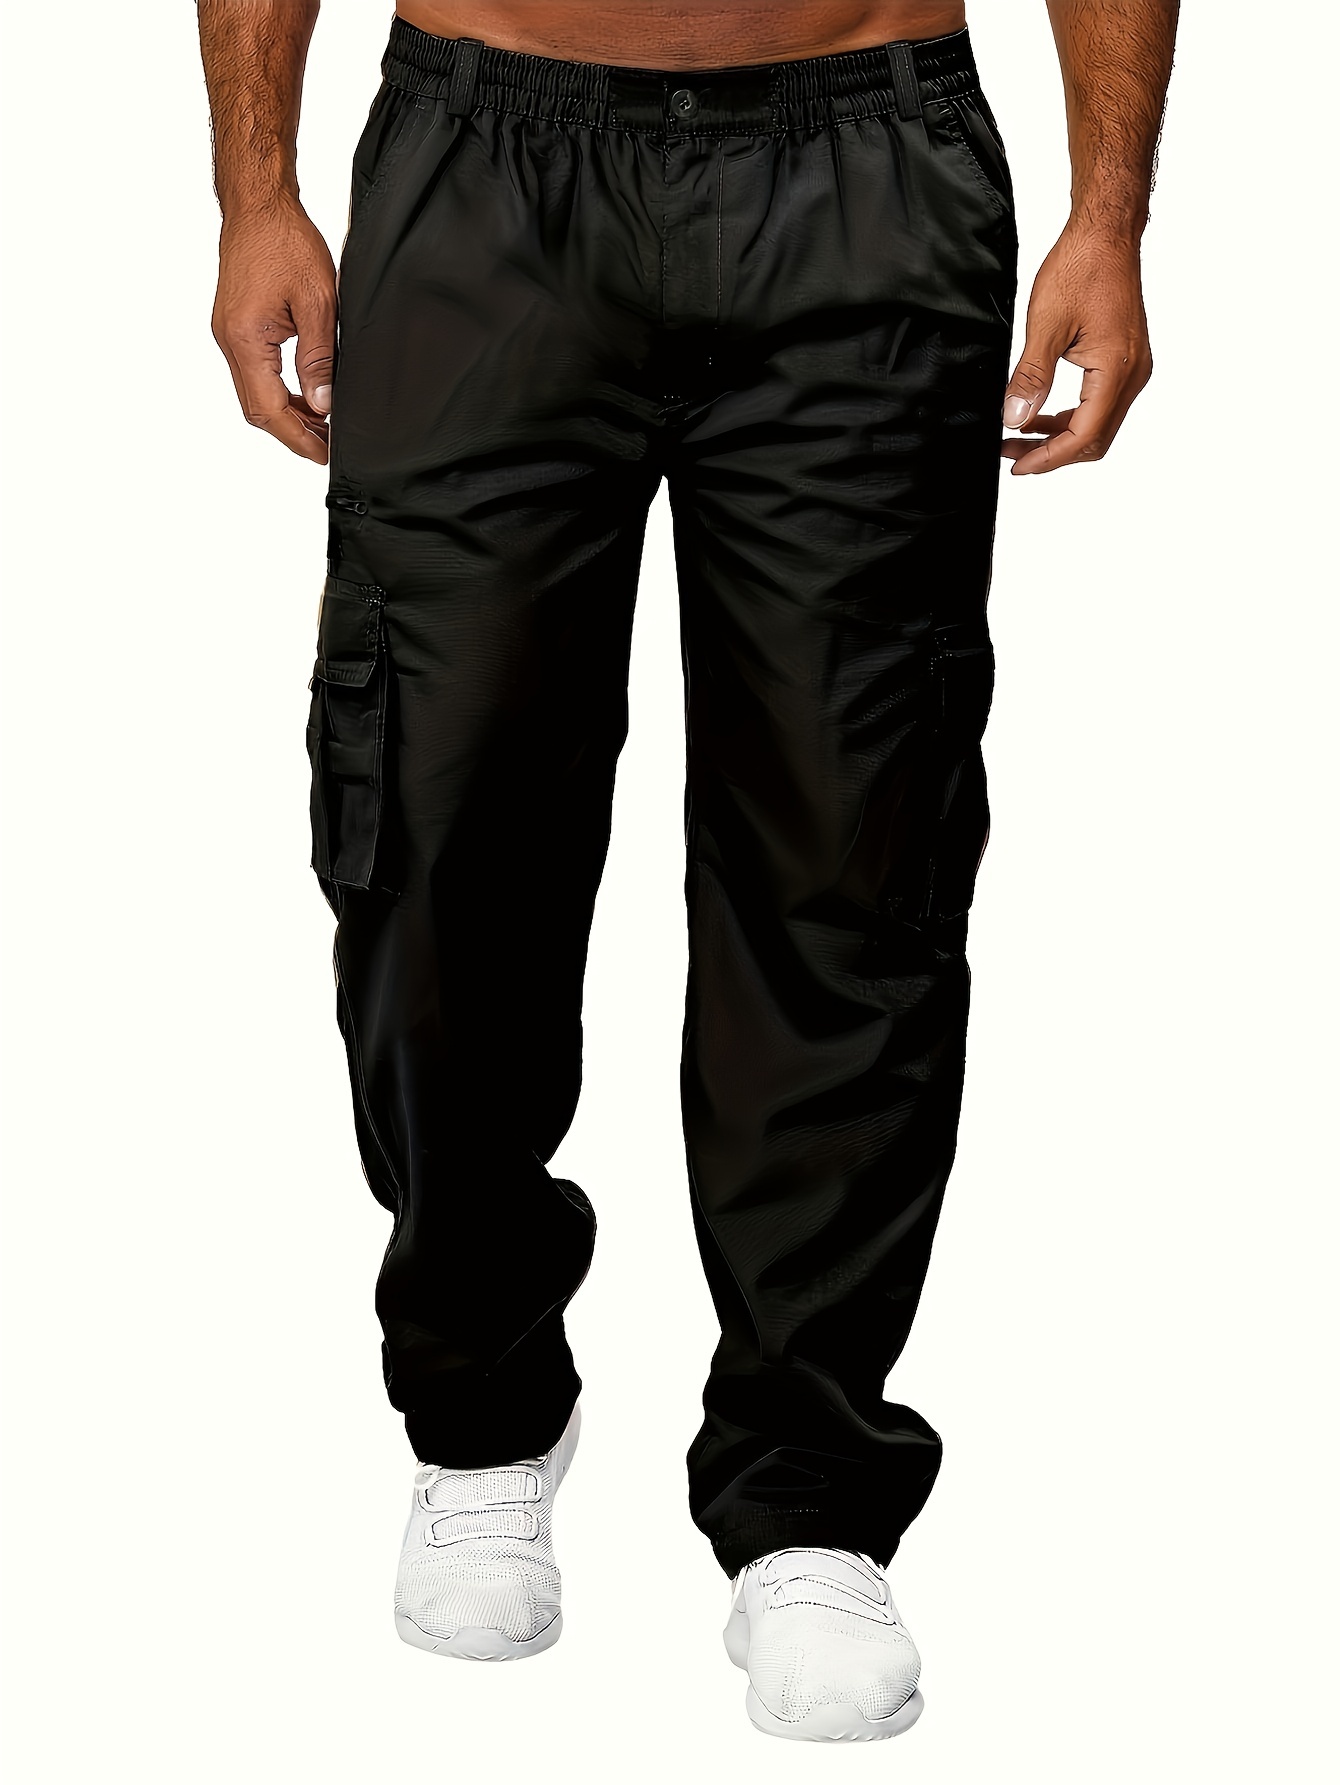 Tech Activemen's Hip Hop Cargo Pants - Slim Fit Polyester